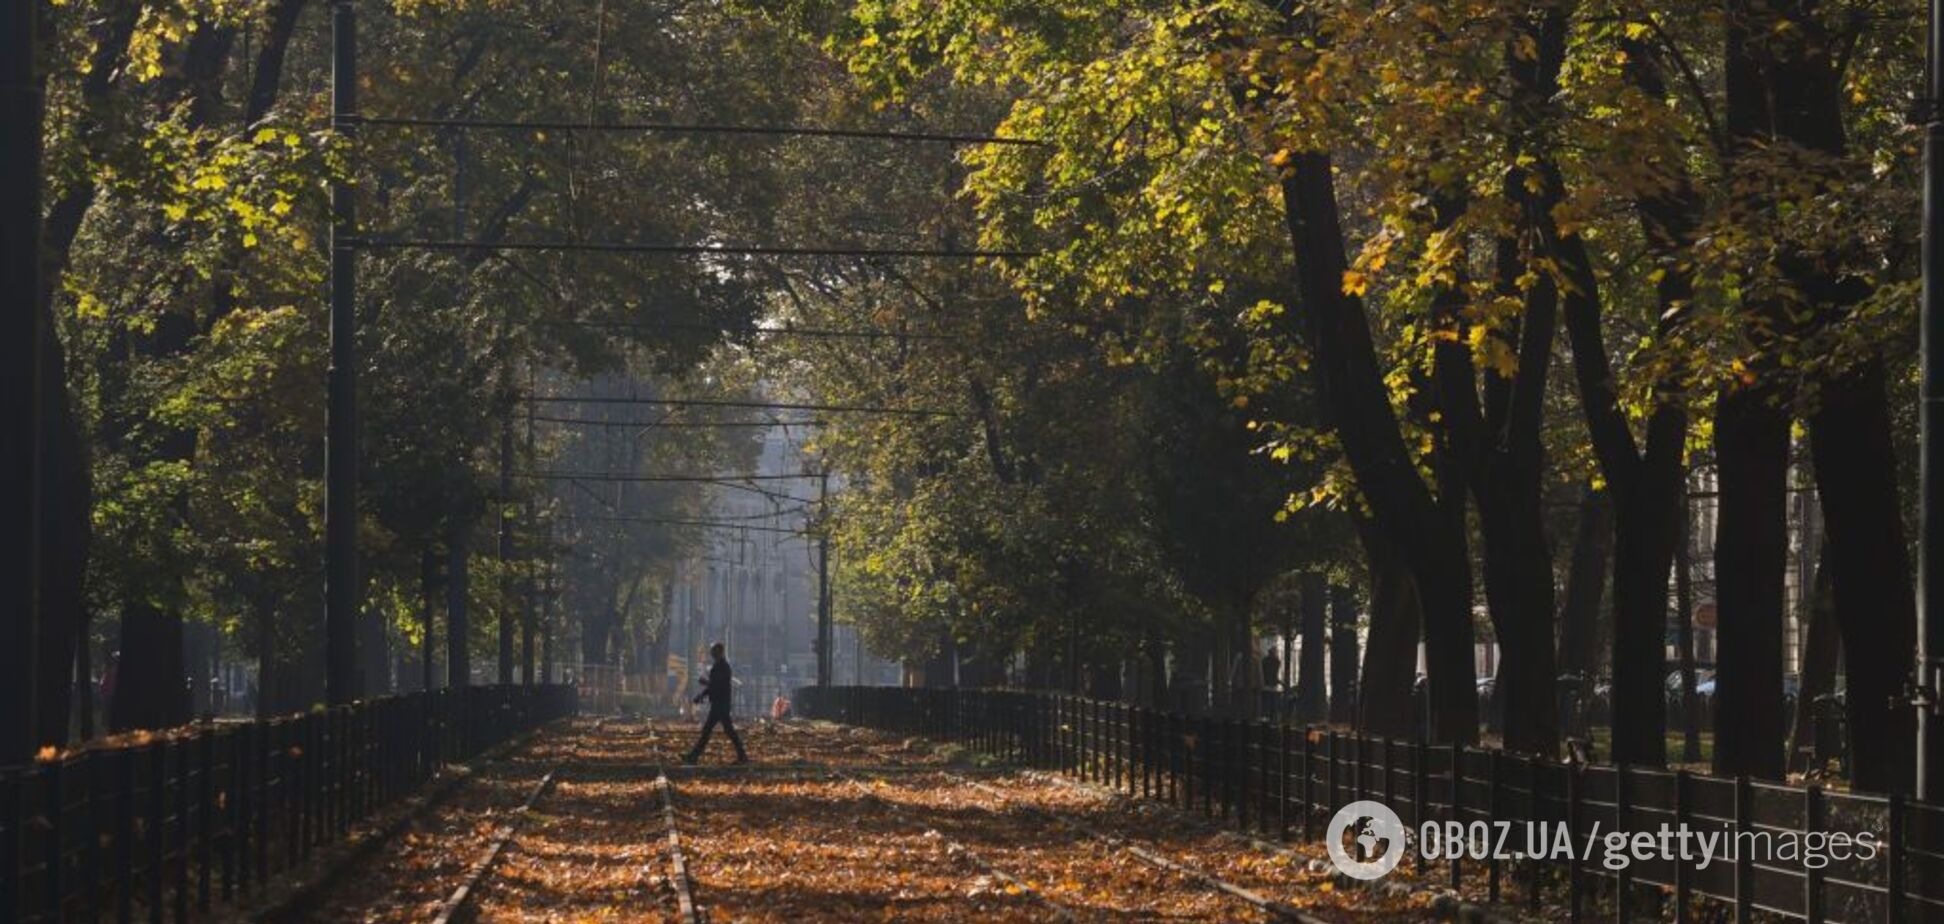 Тепло и солнечно: синоптики порадовали прогнозом погоды в Украине